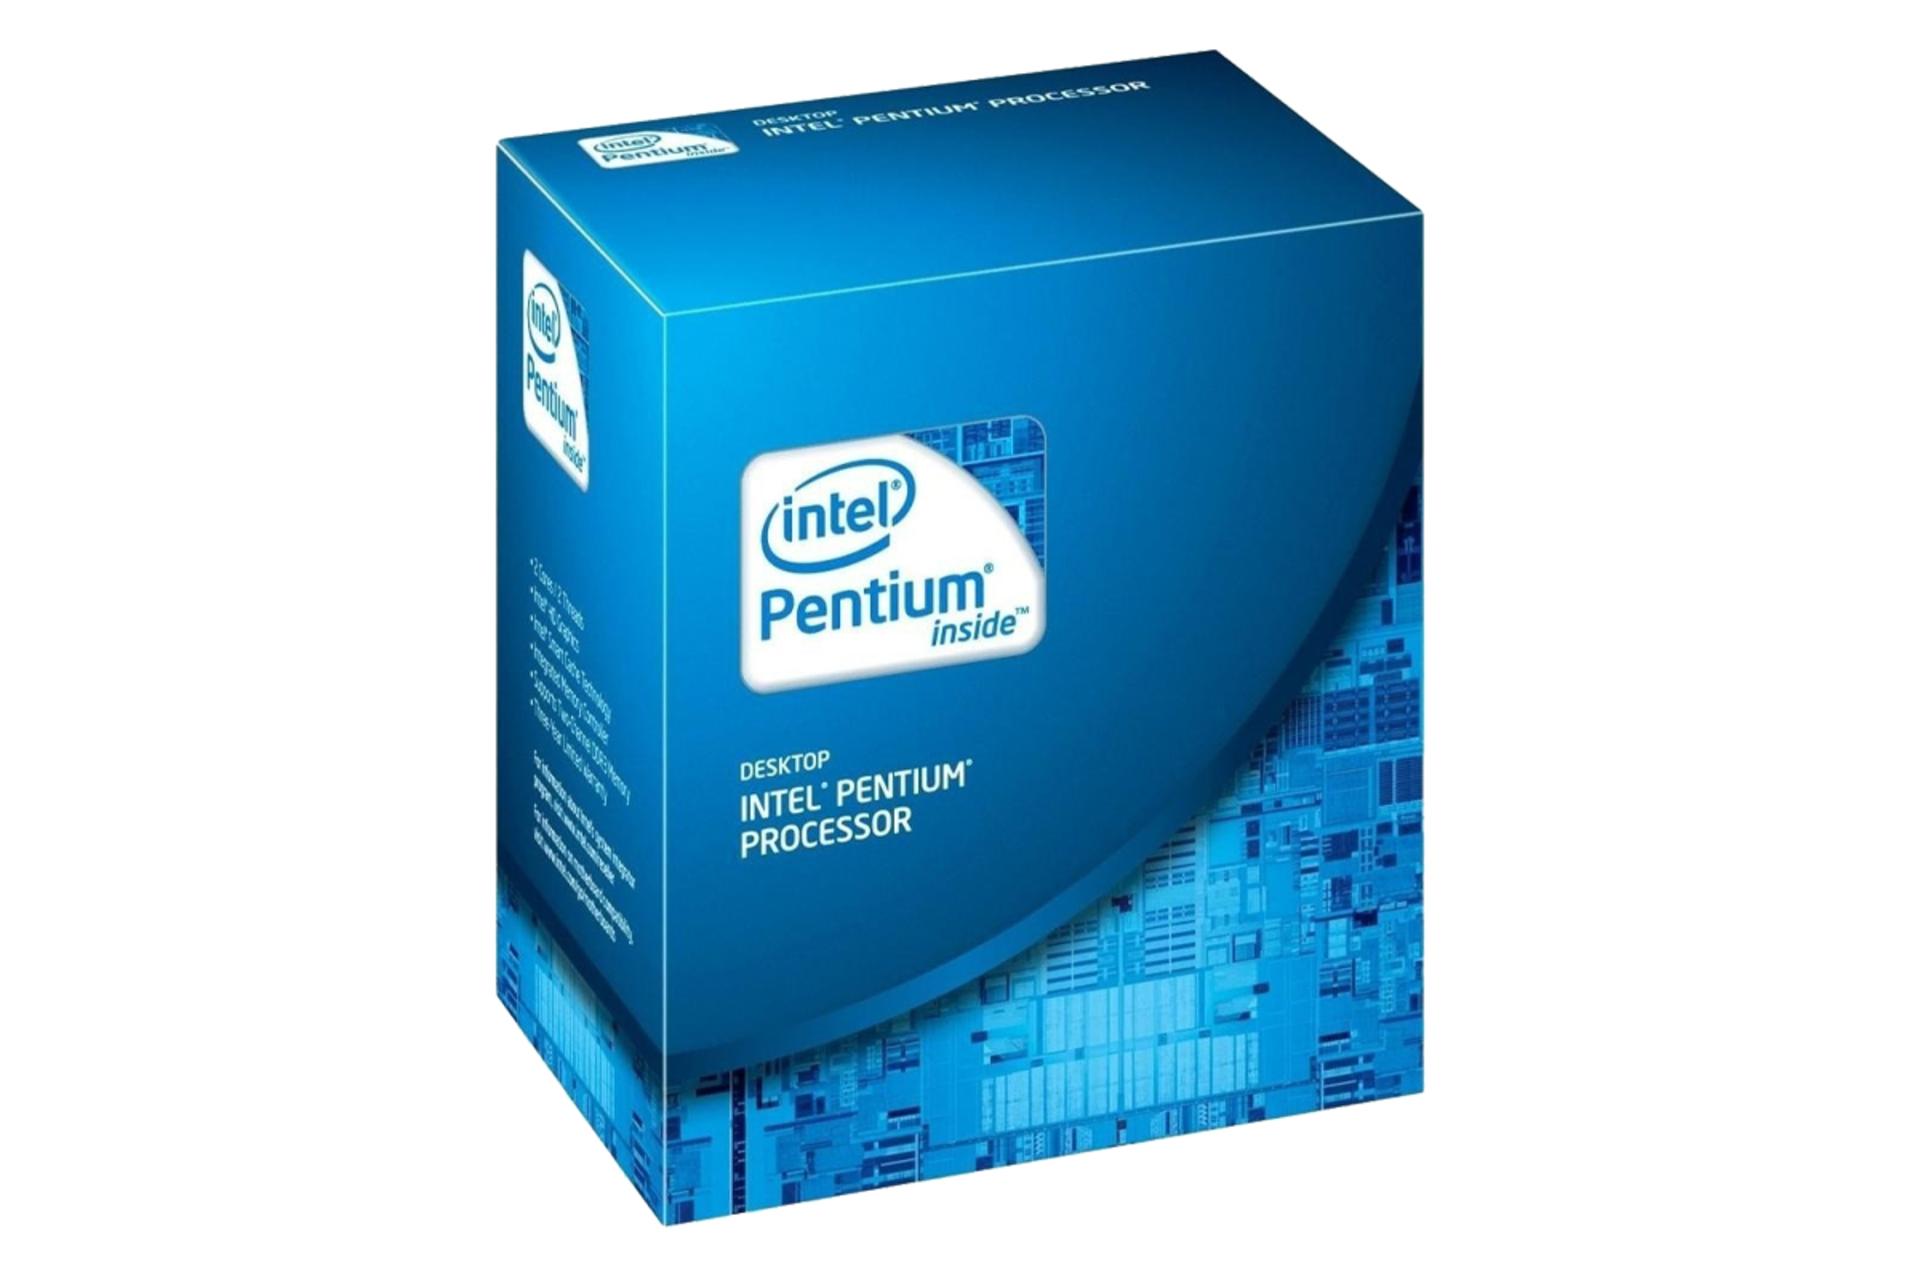  اینتل پنتیوم E2180 / Intel Pentium E2180